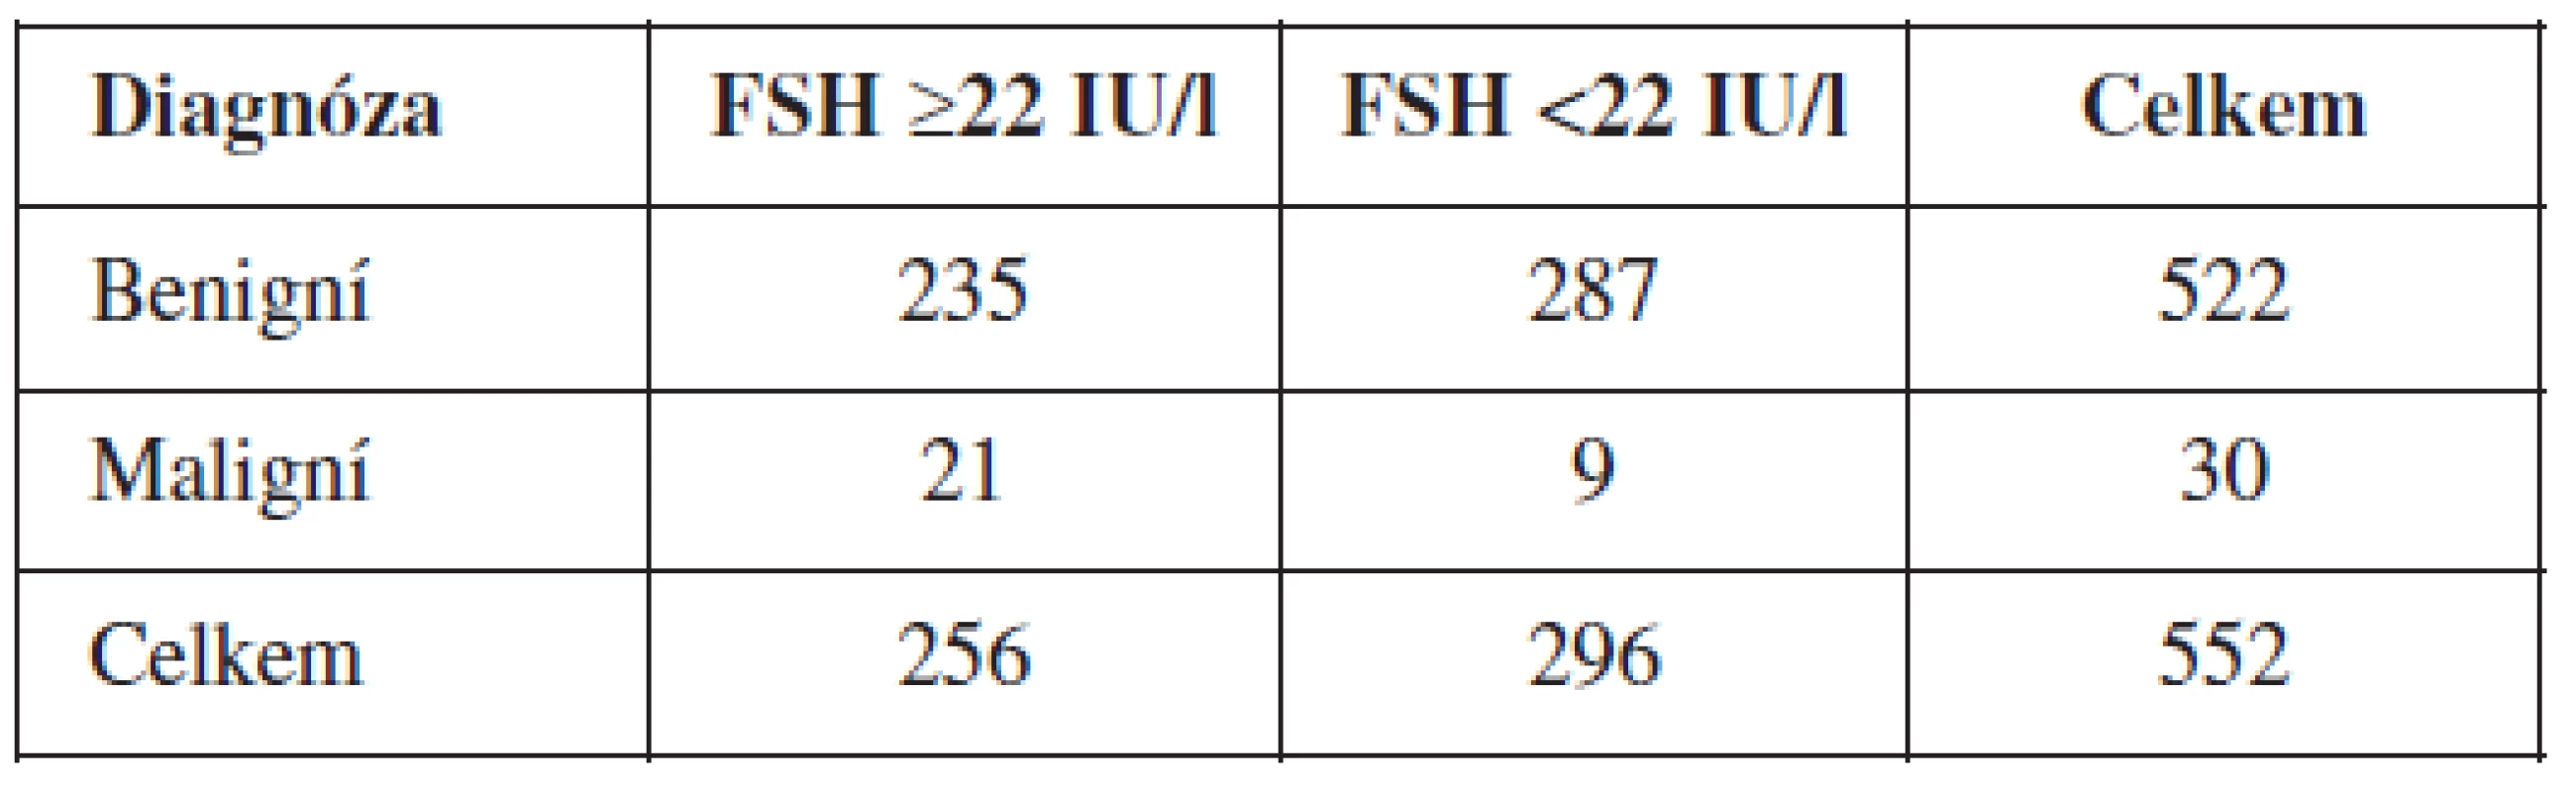 Počet žen ve skupinách po rozdělení podle FSH cut-off 22 IU/l a diagnóz